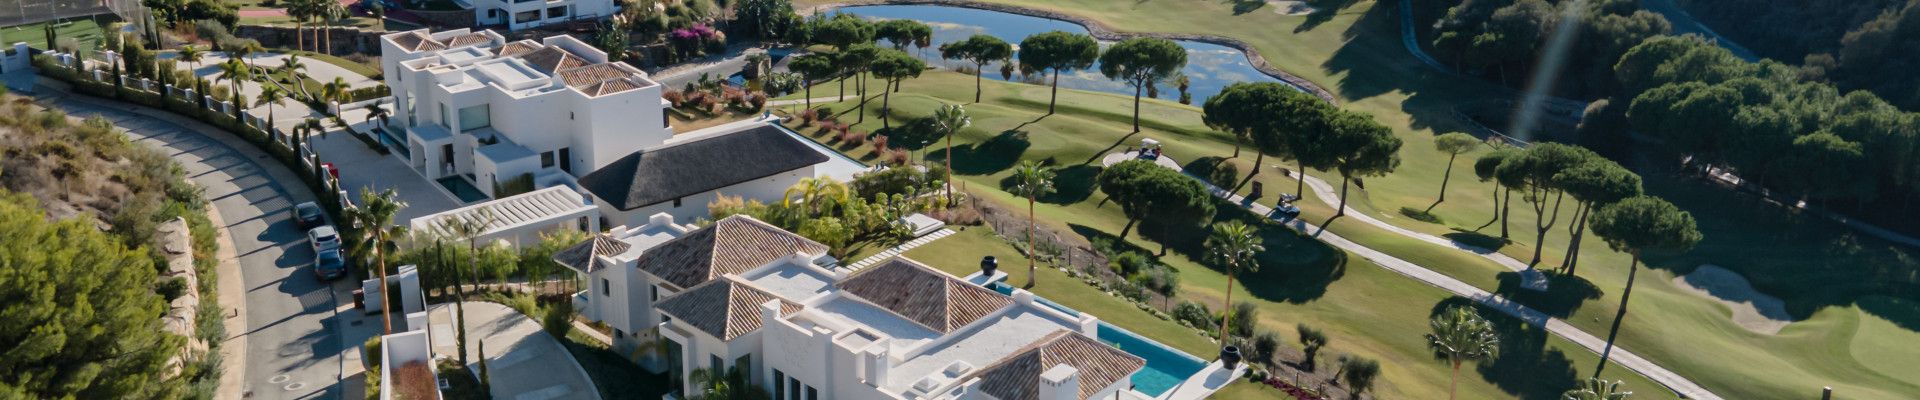 Propiedades de Lujo en Venta en el Marbella Club Golf Resort